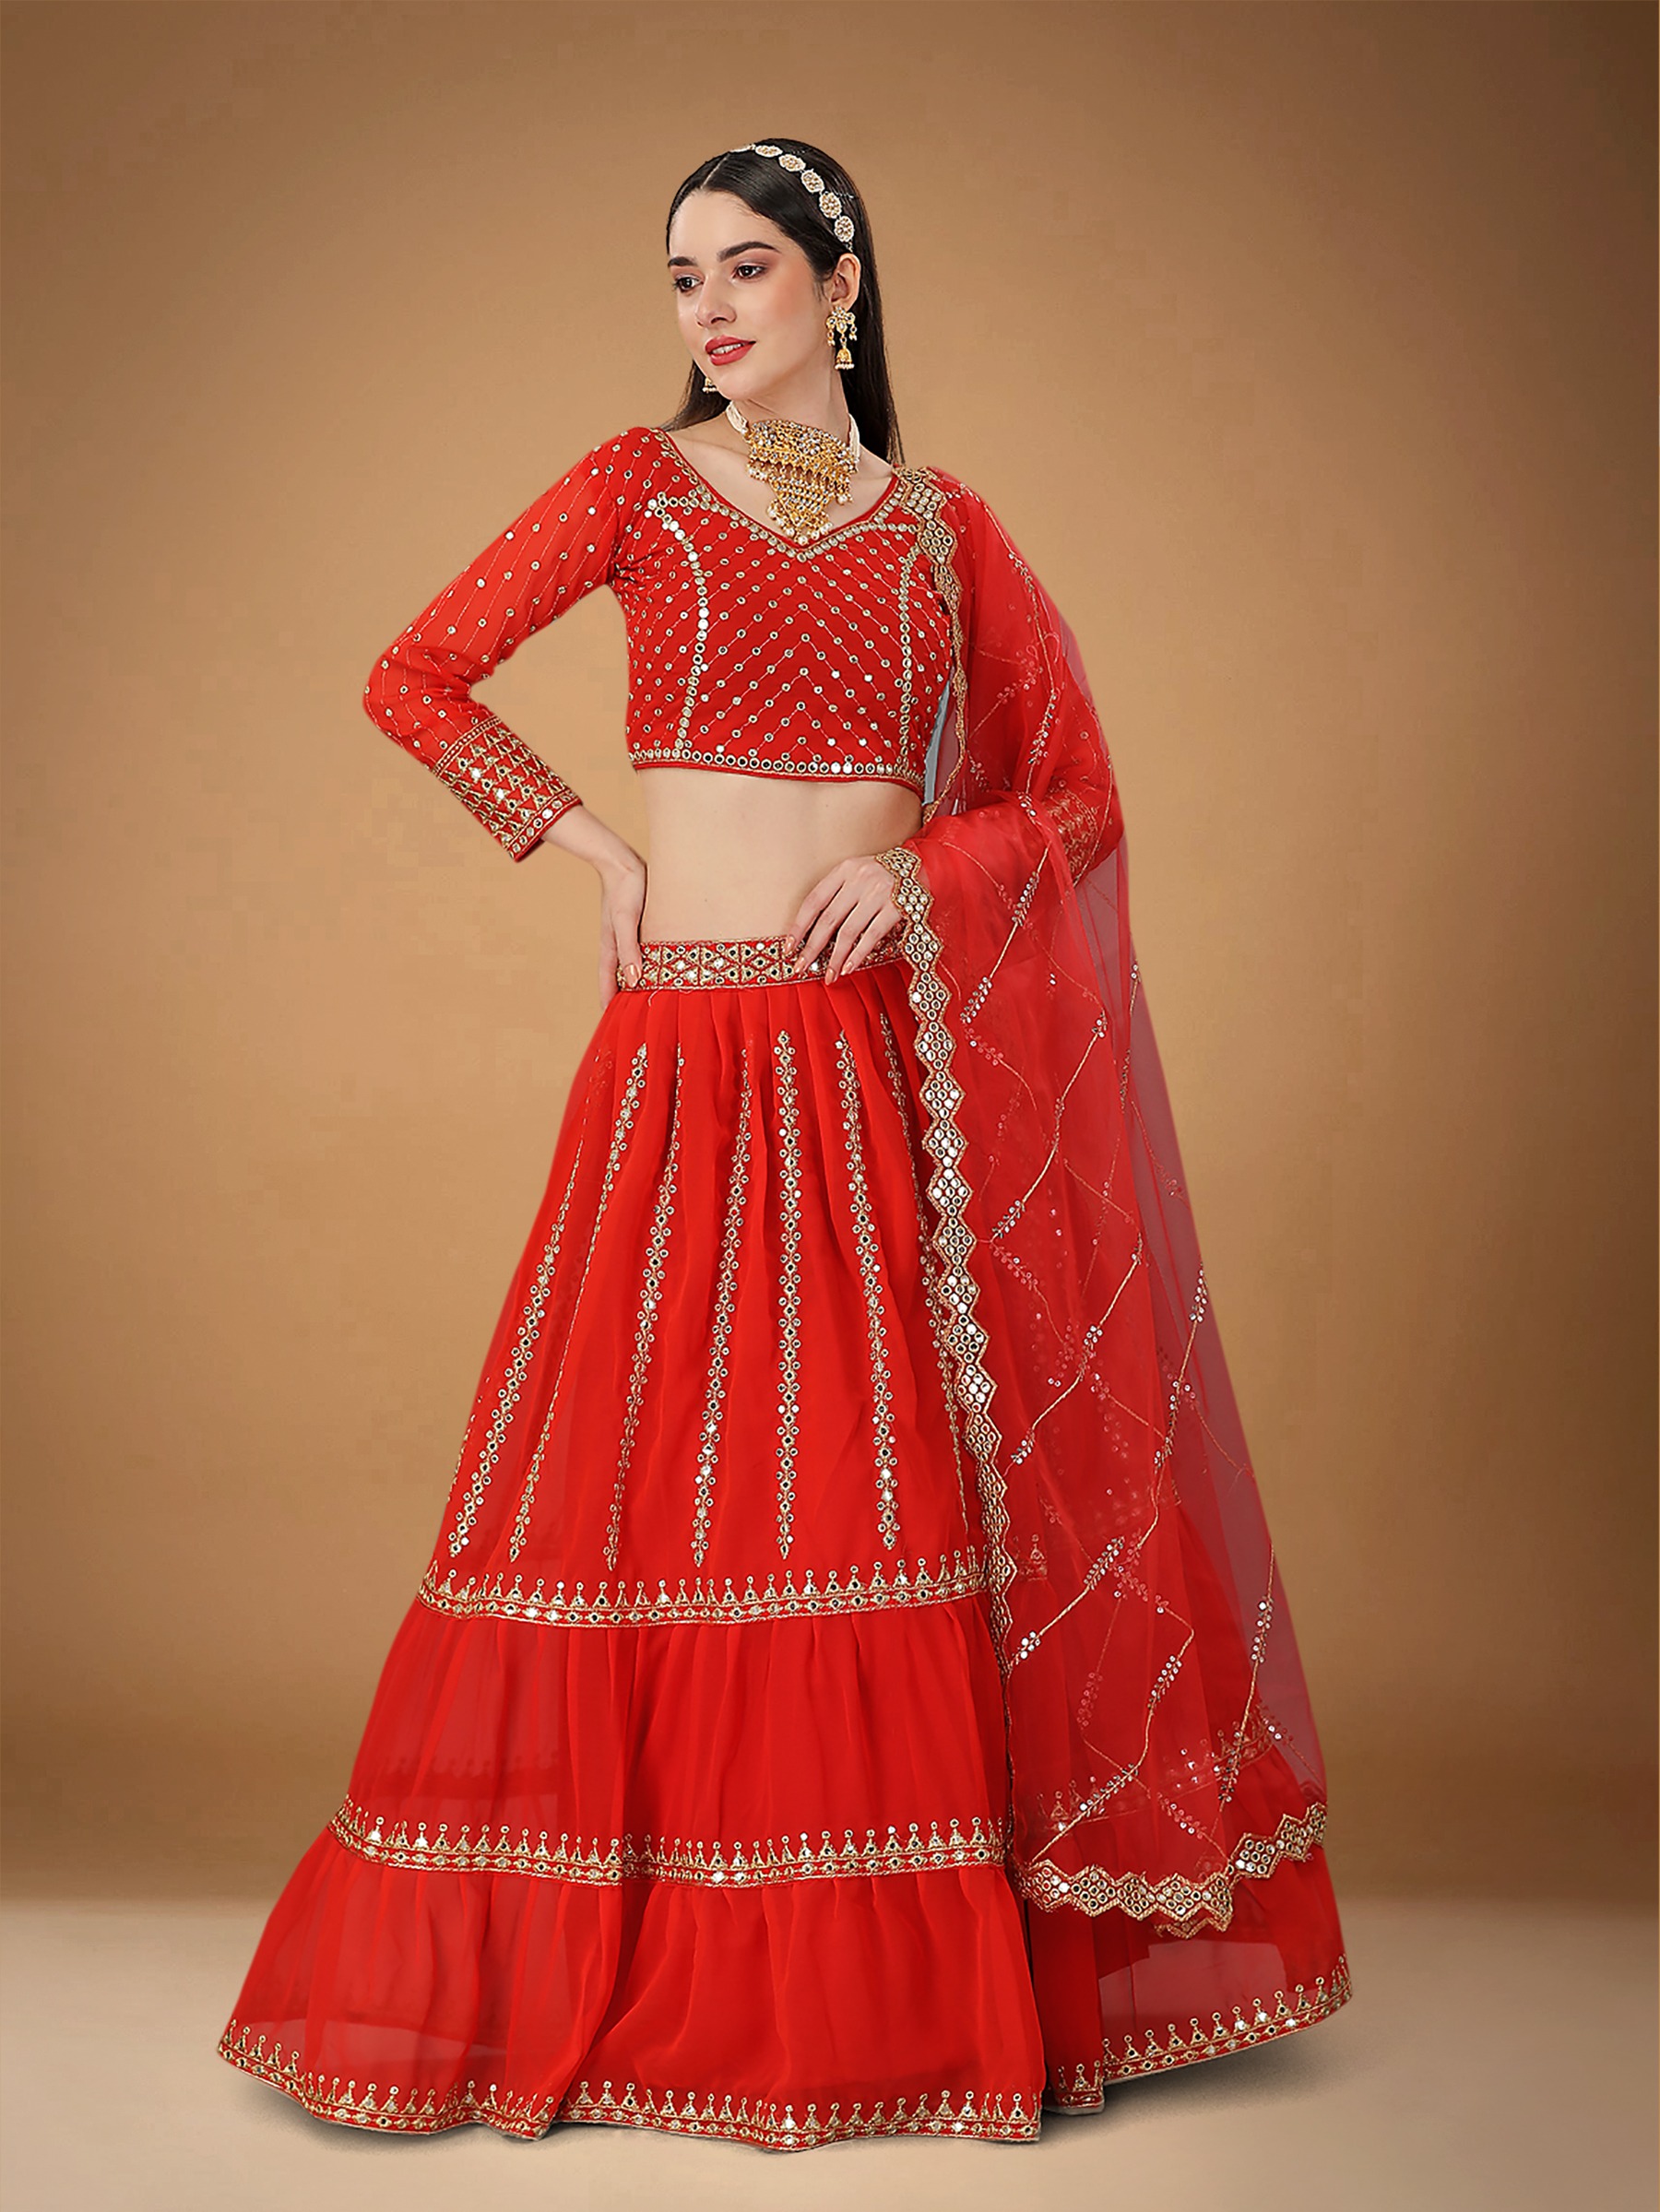 Sabyasachi Inspired Red Color Wedding Lehenga Set | Latest bridal lehenga,  Indian wedding dress red, Indian bridal dress